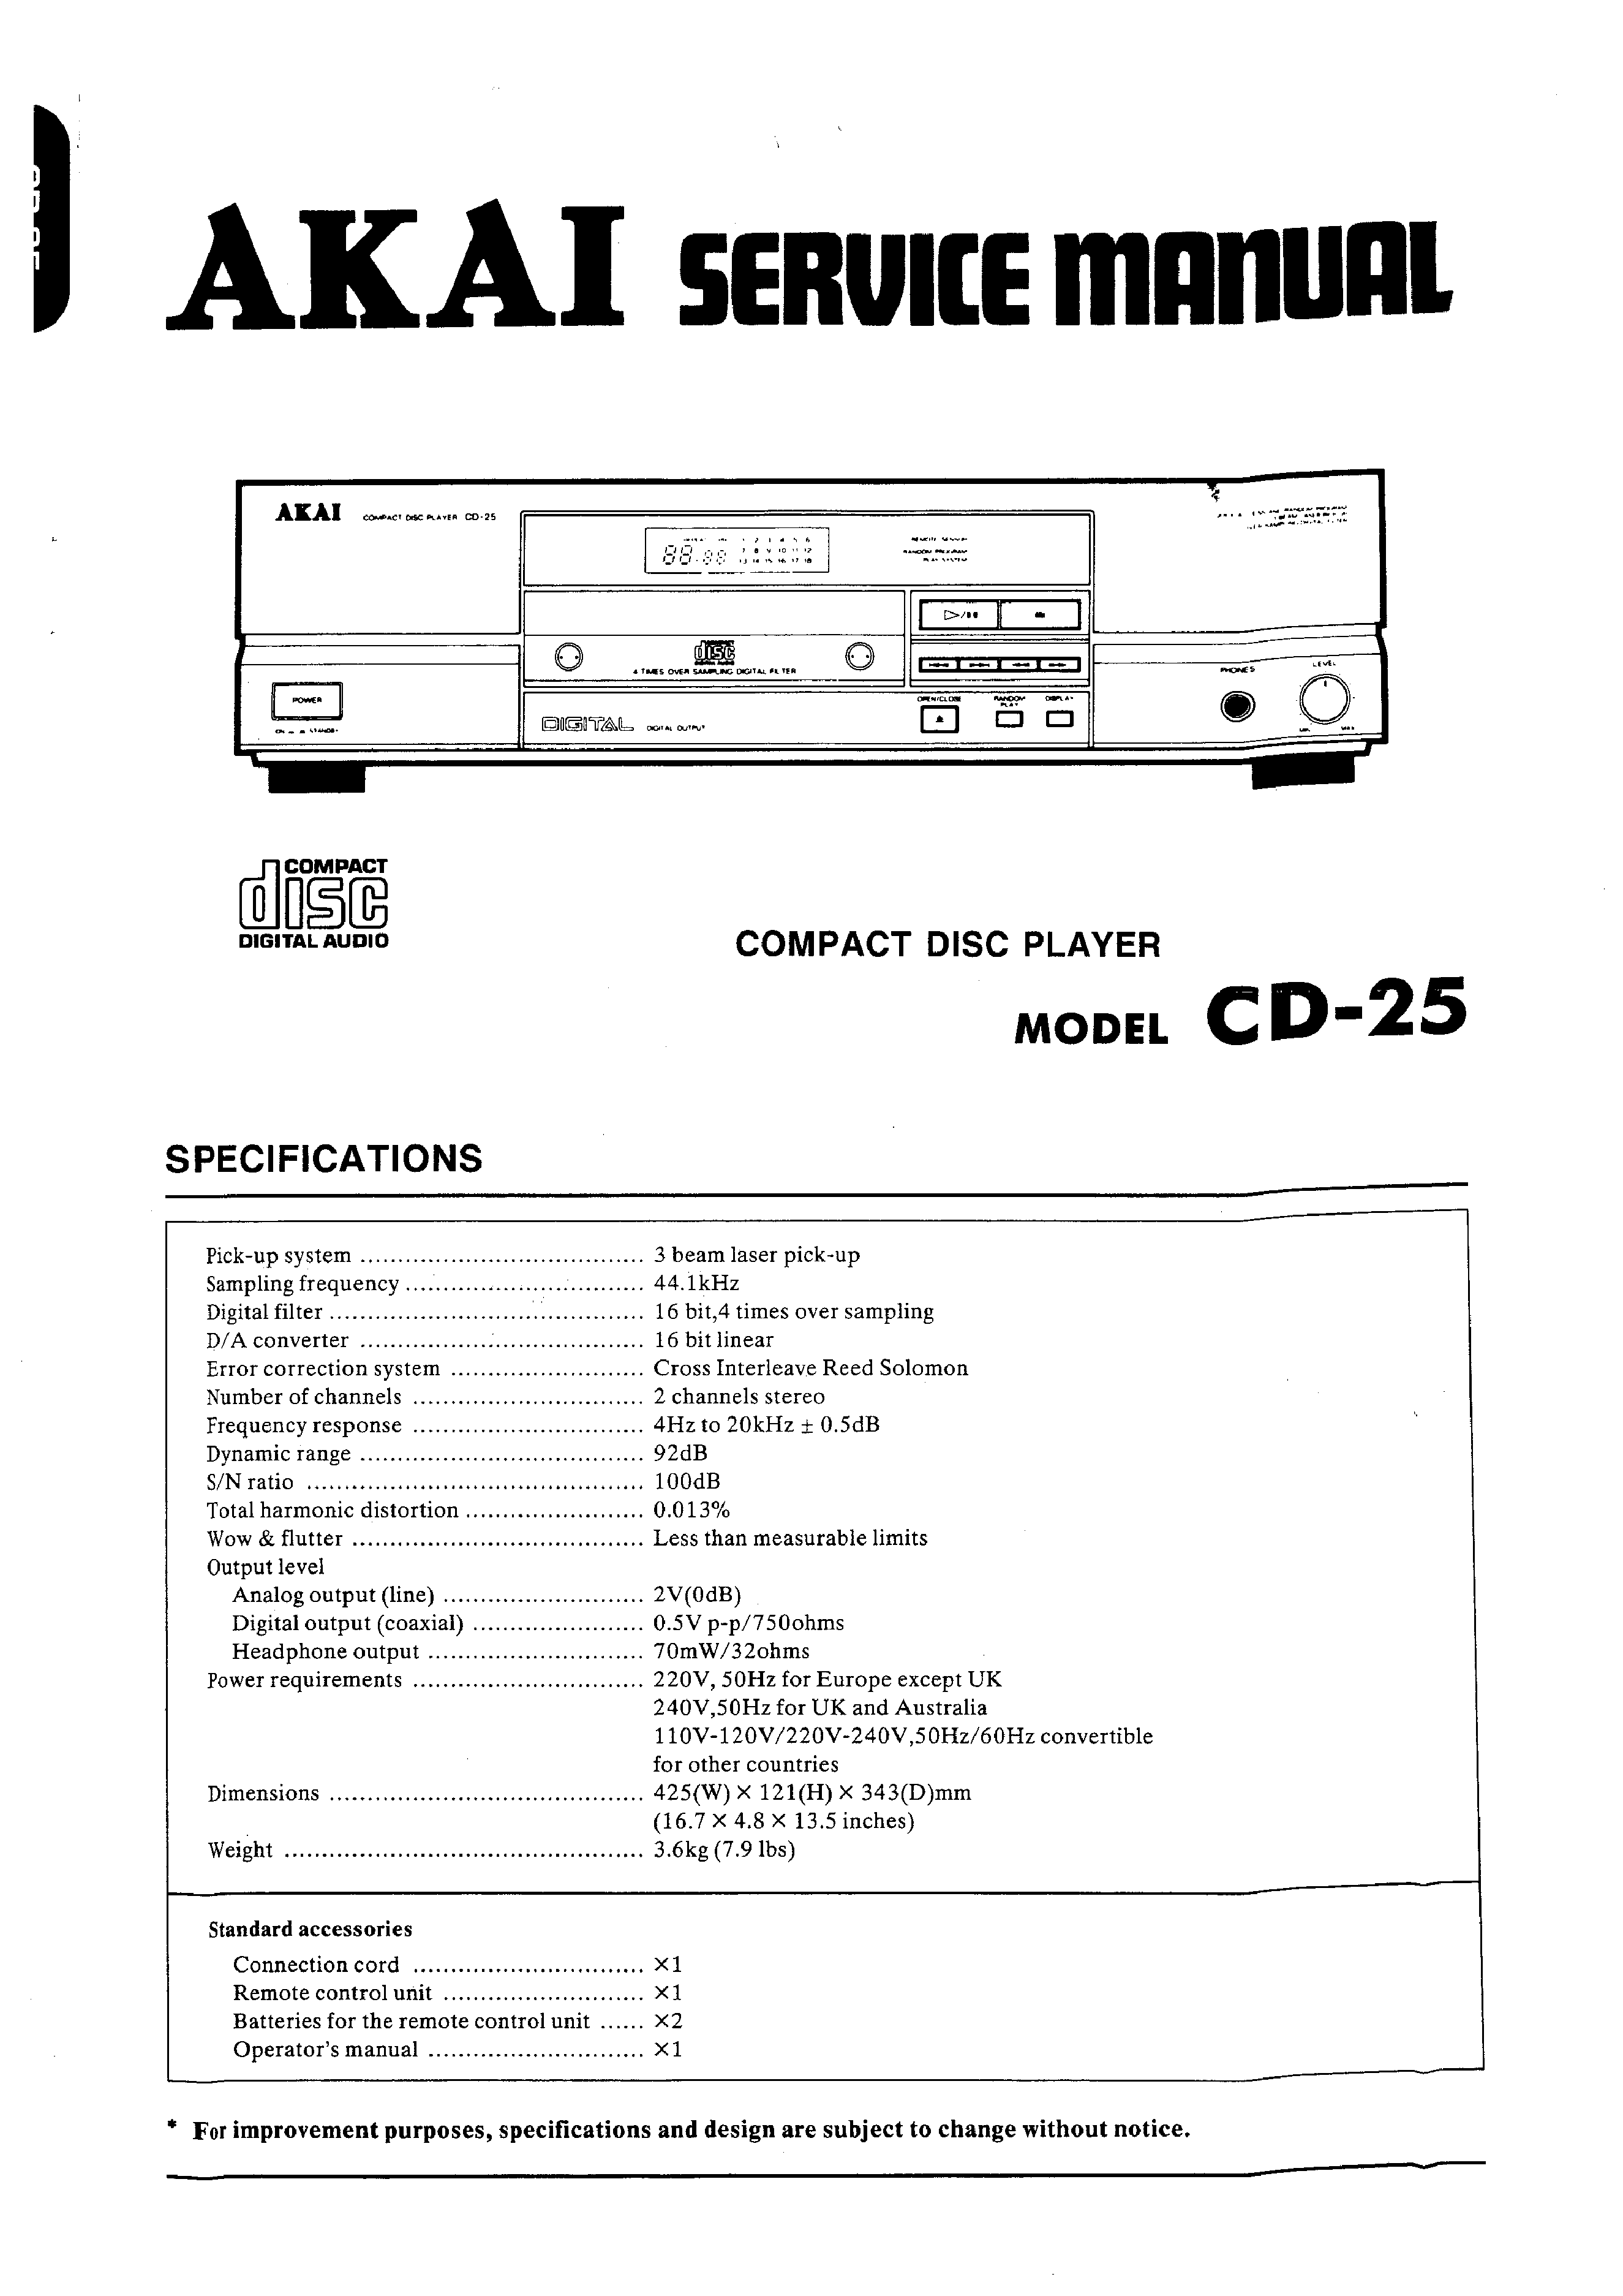 ORIGINALI Service Manual Schema Elettrico AKAI cd-25 